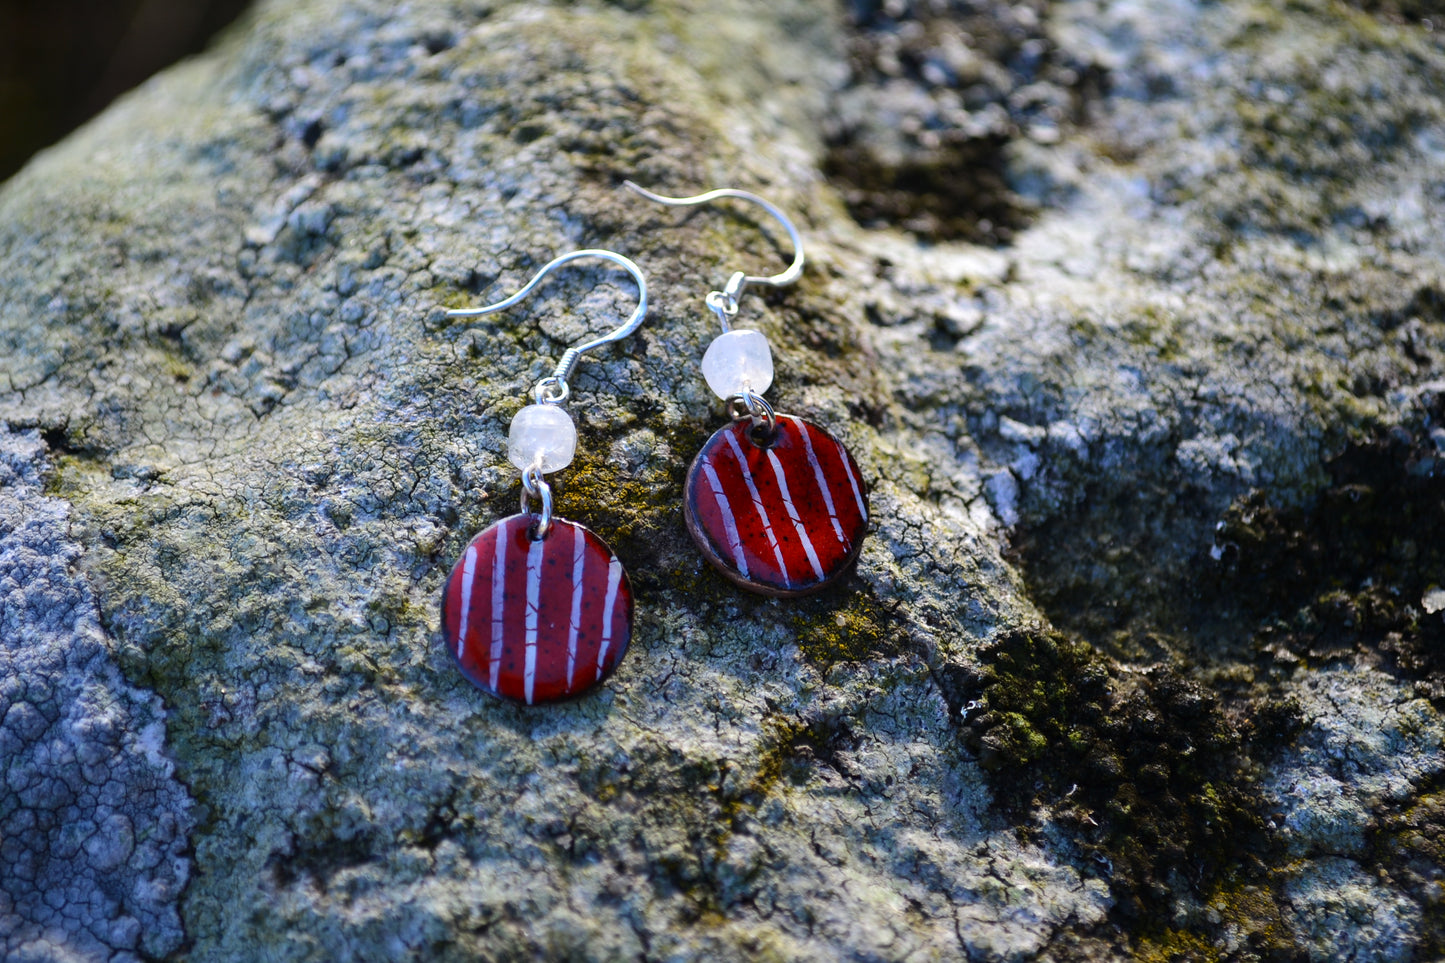 Dangle Earrings. Glorious Red Enamel Earrings. Handmade, simple and very red!